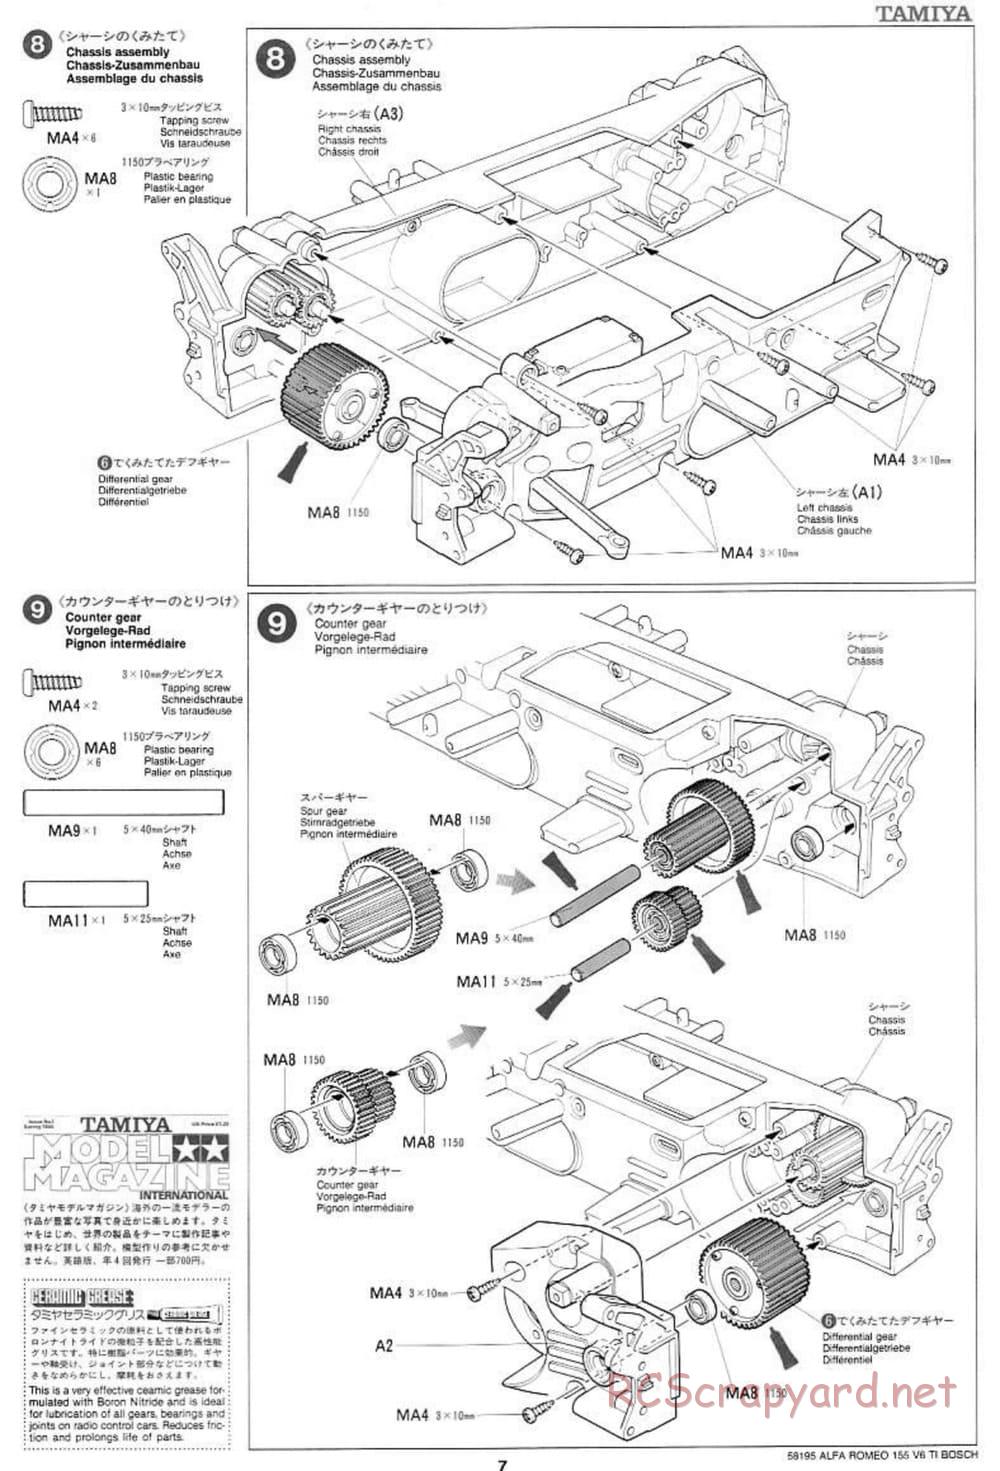 Tamiya - Alfa Romeo 155 V6 TI BOSCH - TL-01 Chassis - Manual - Page 7